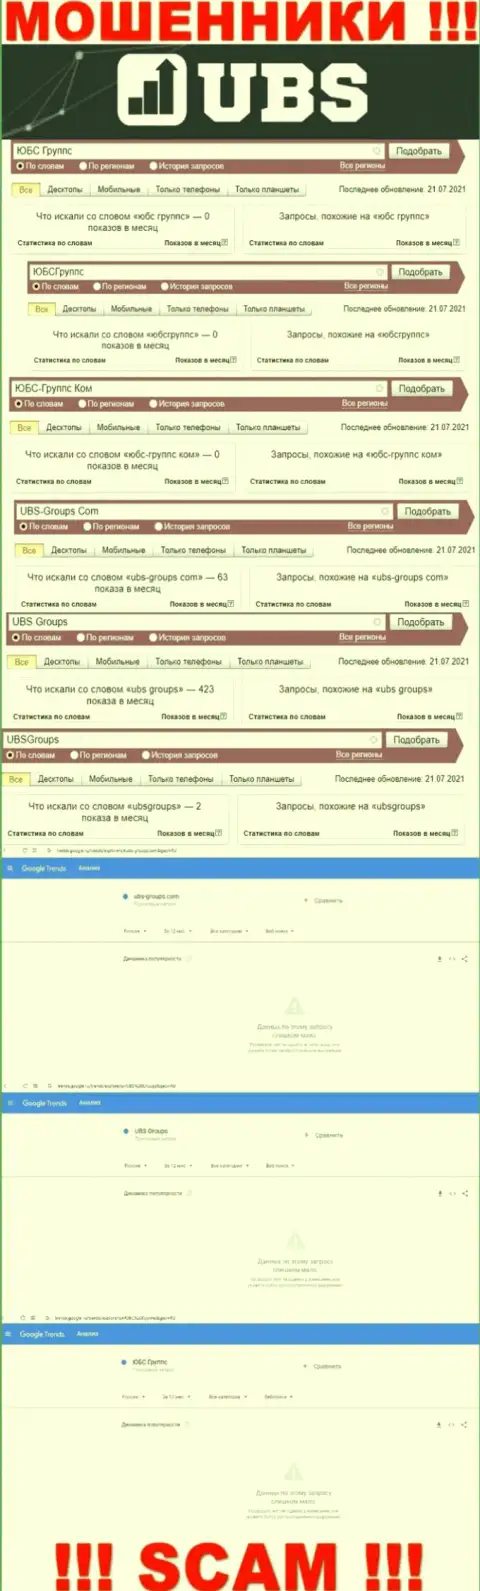 Скрин результата поисковых запросов по мошеннической компании ЮБС Группс